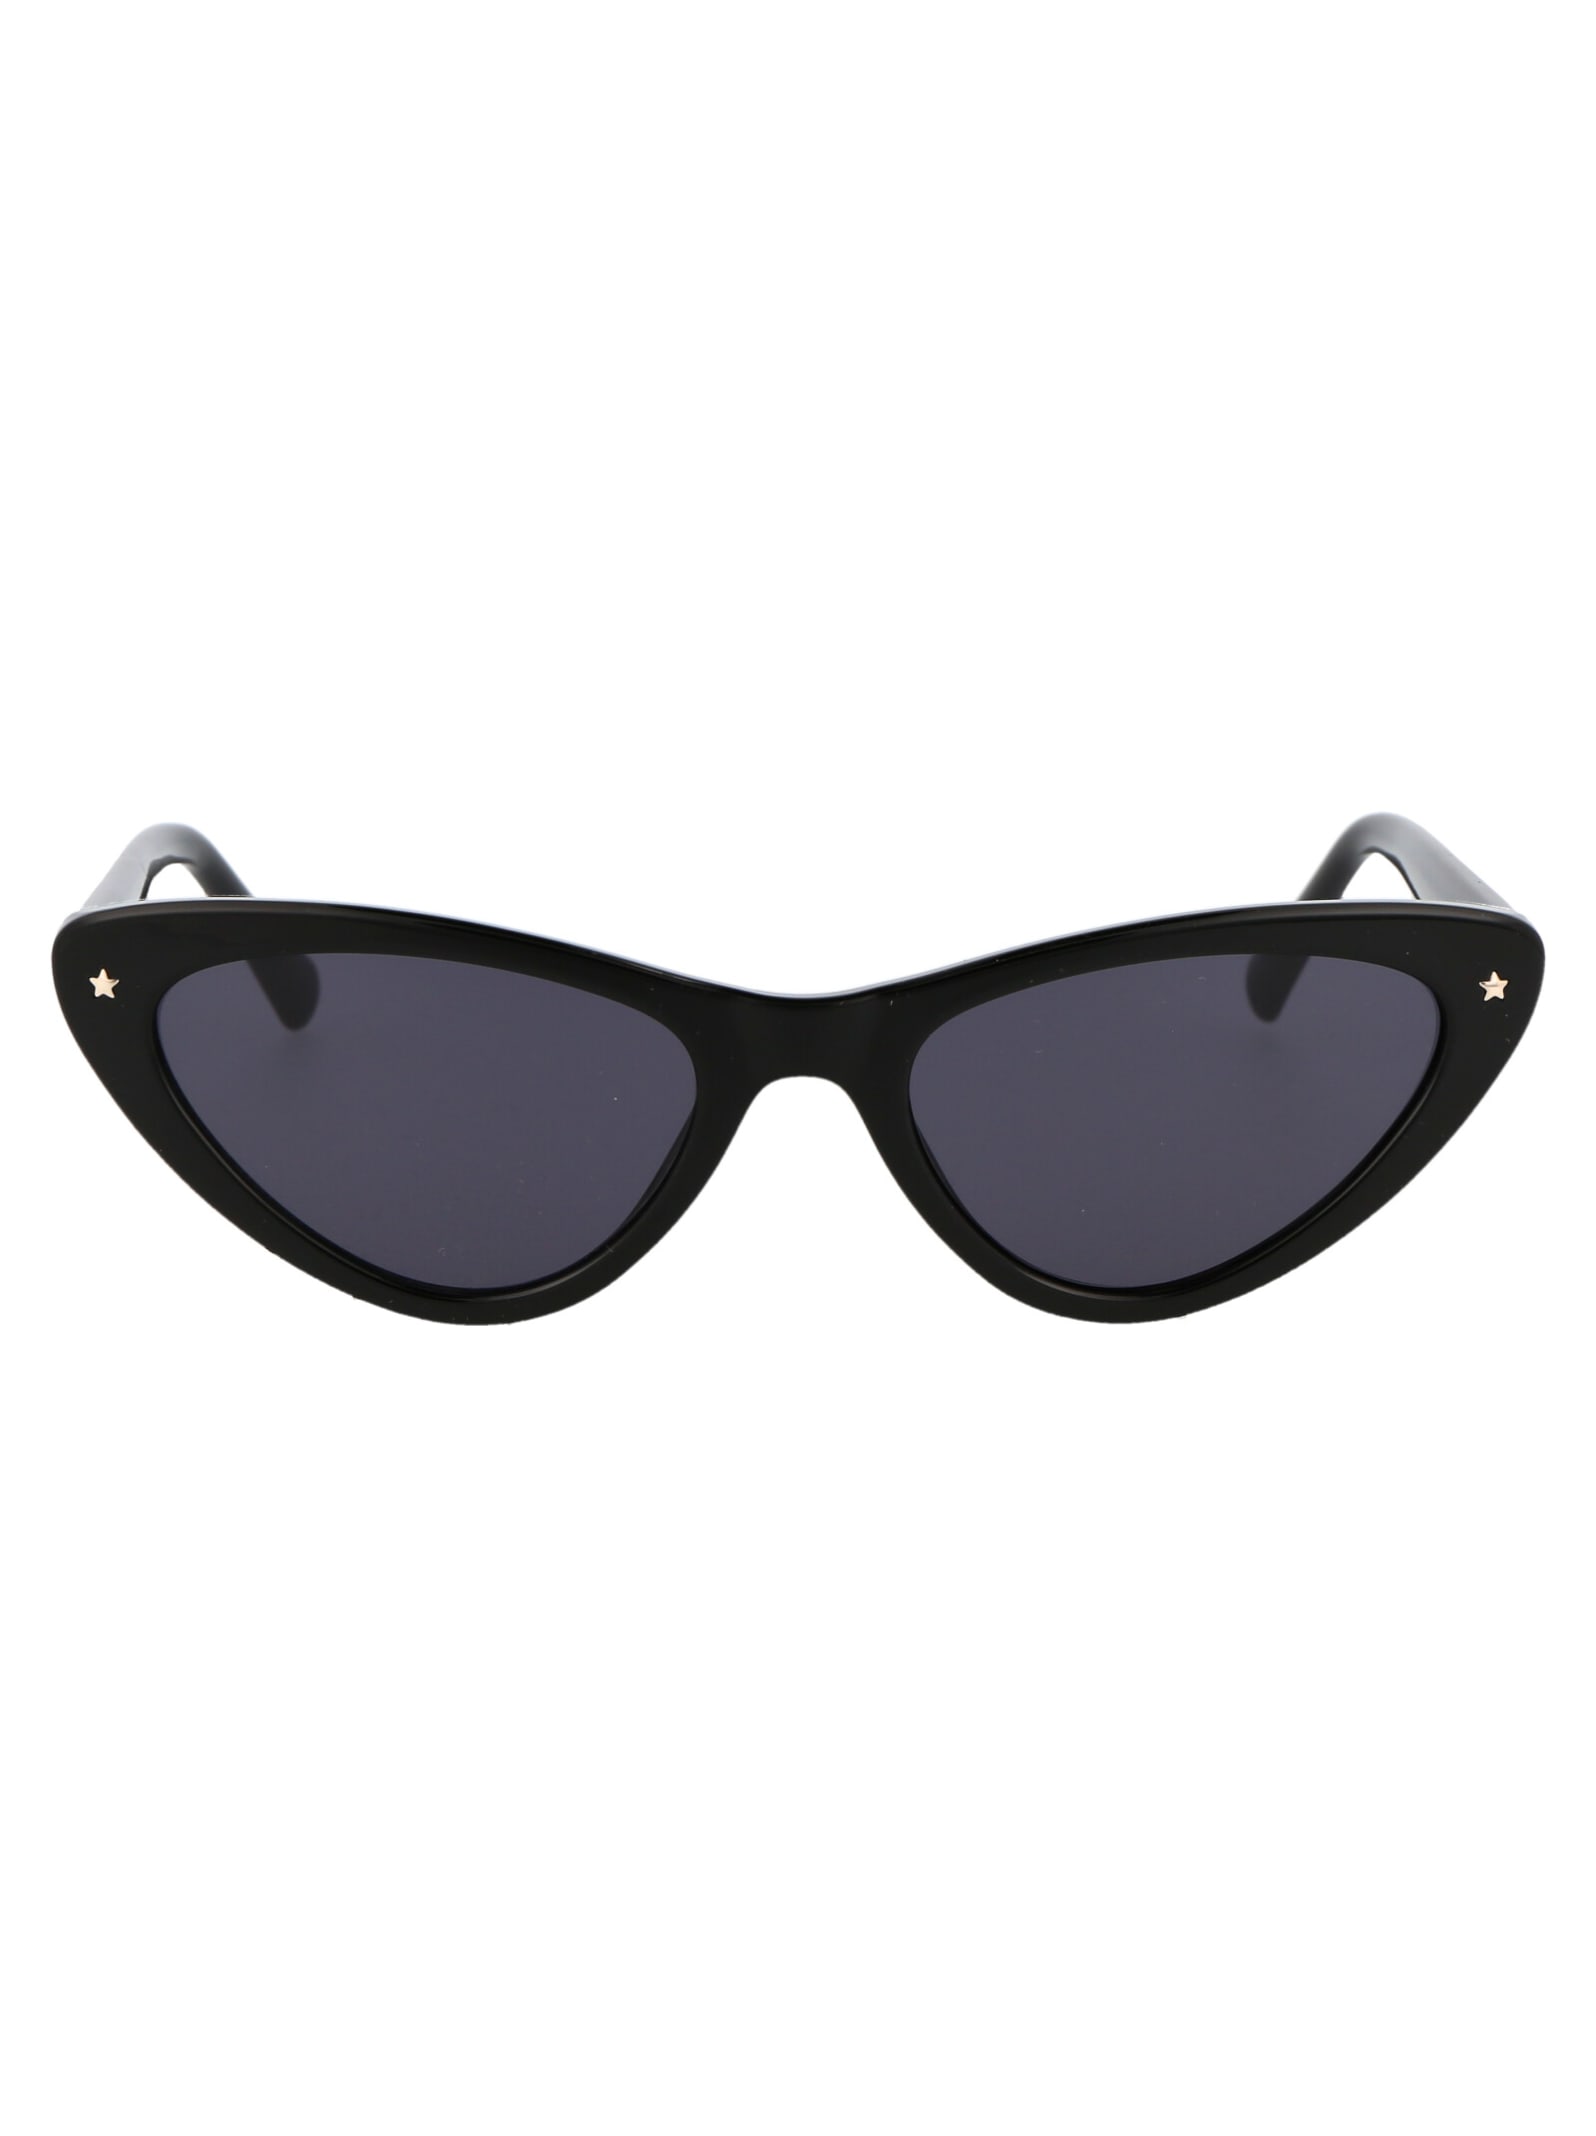 Chiara Ferragni Cf 7006/s Sunglasses